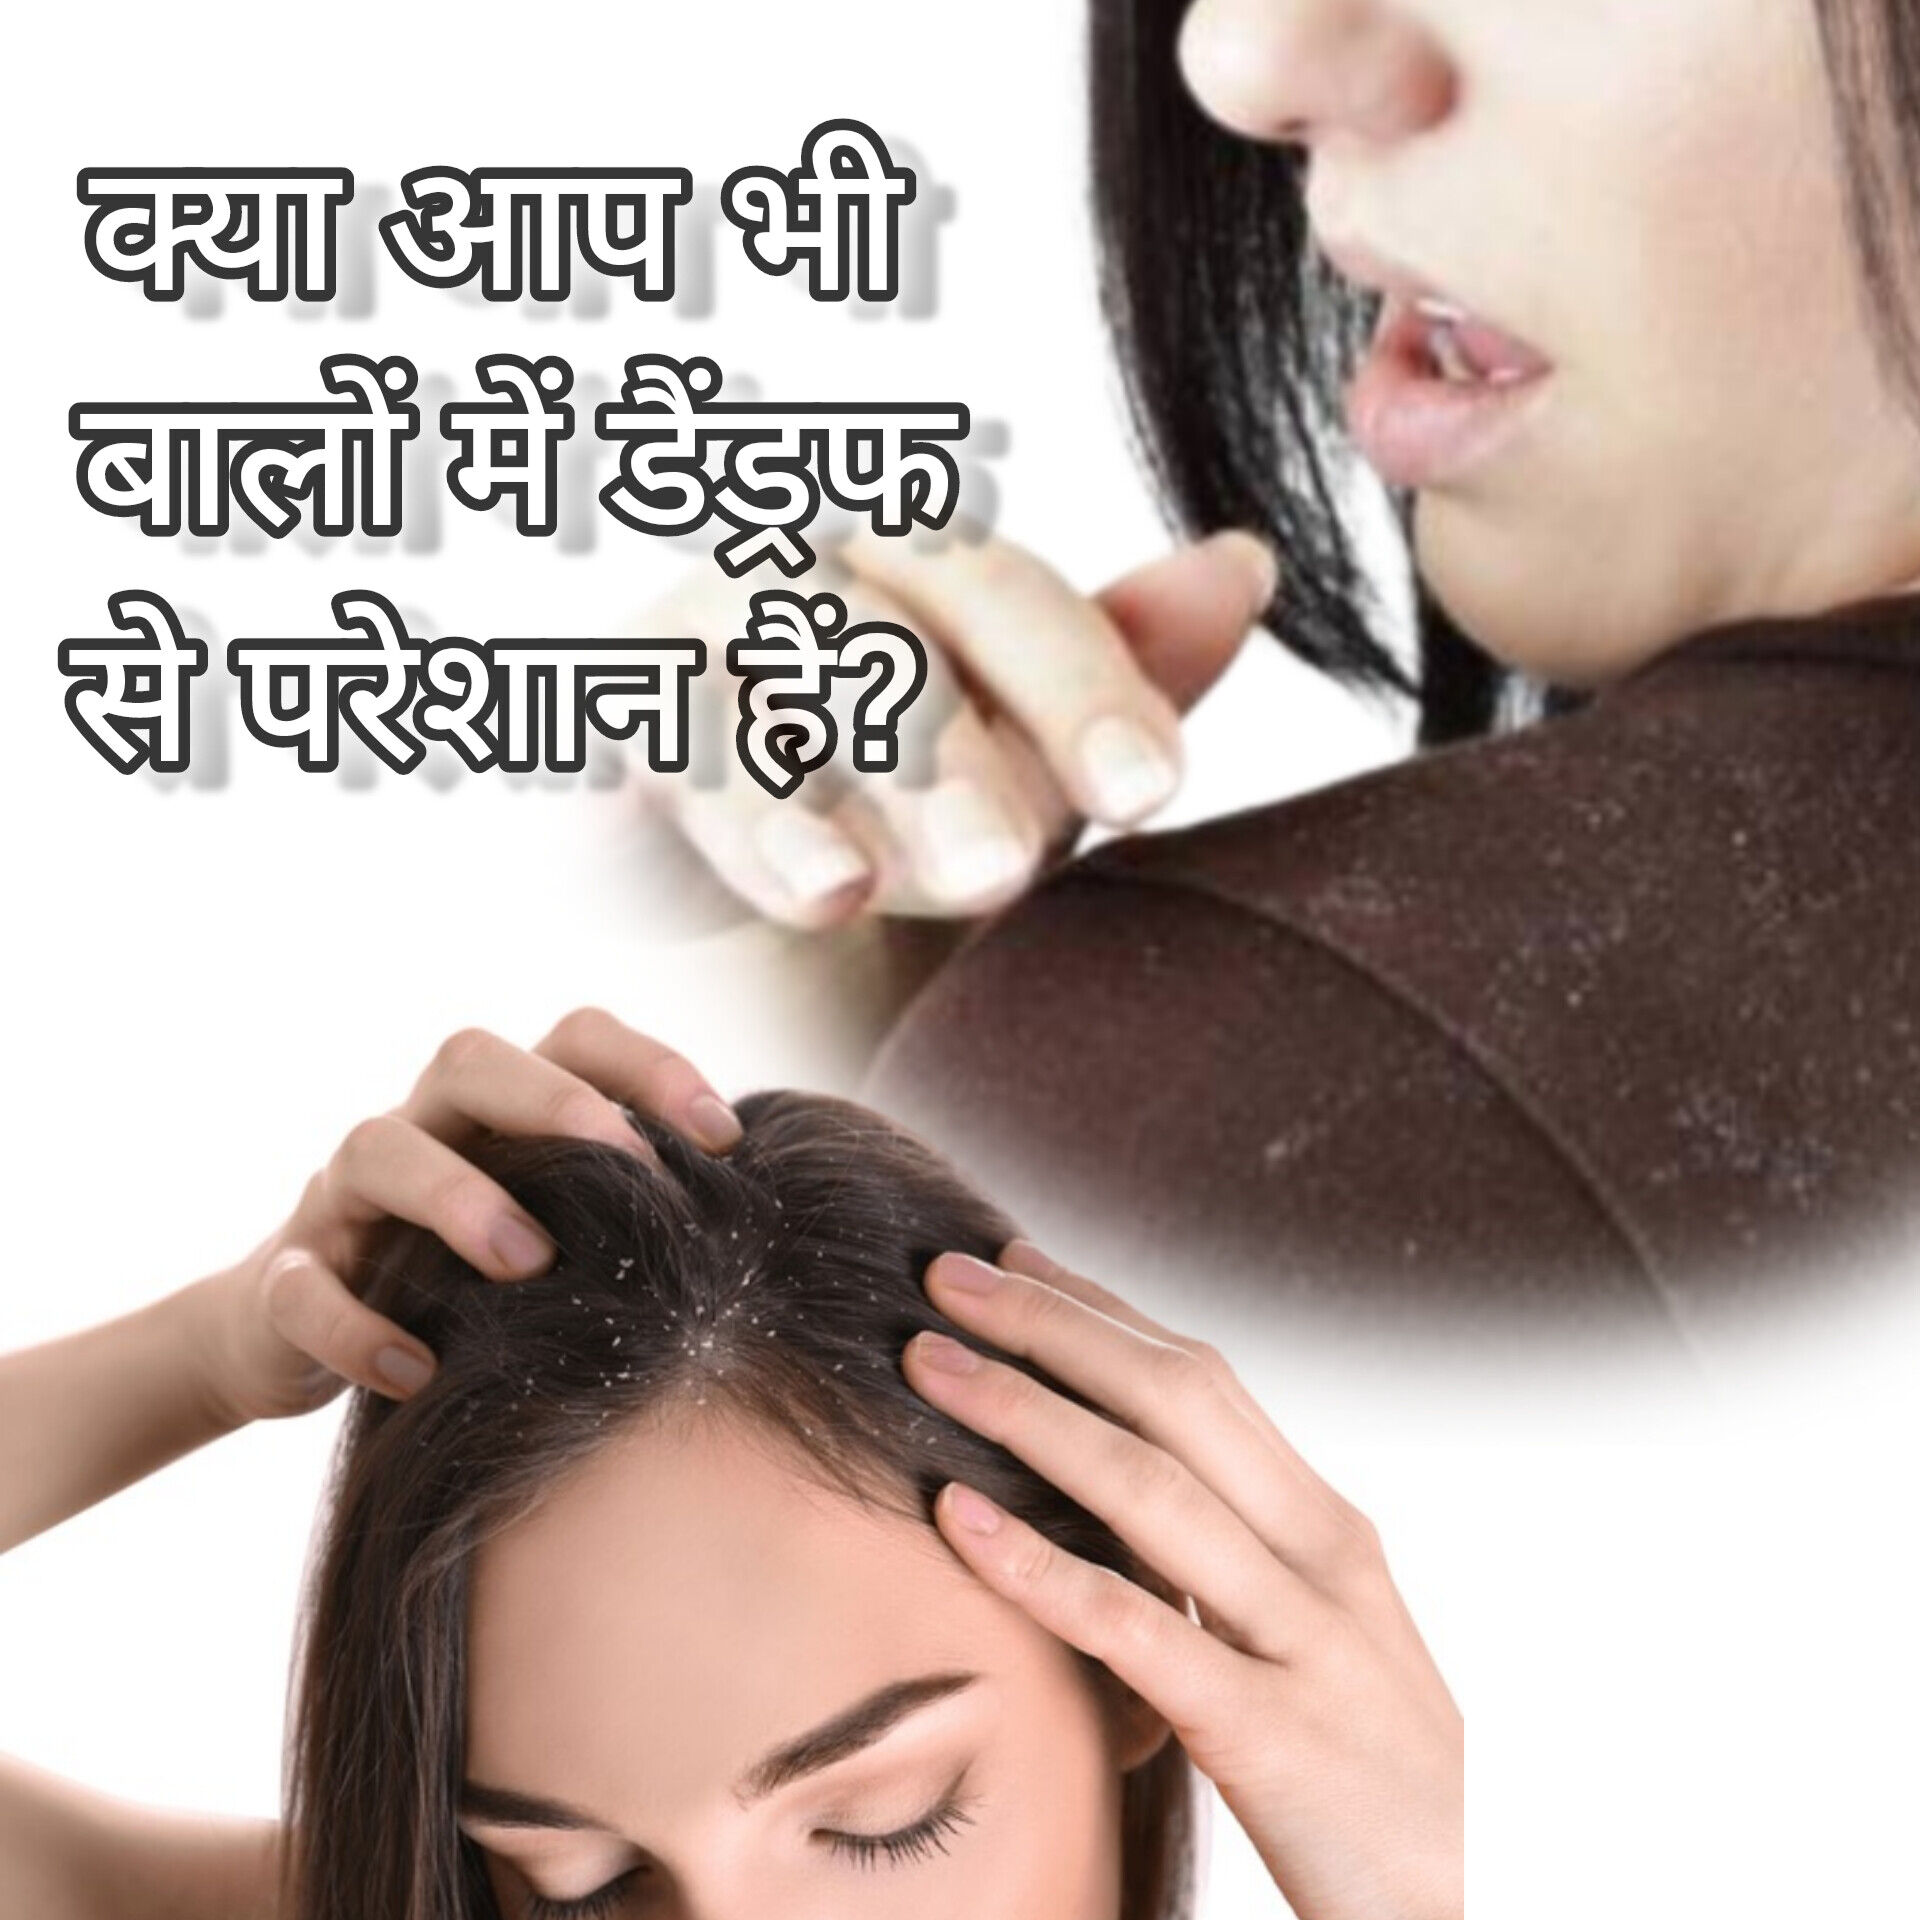 बालों में डैंड्रफ, कारण, लक्षण और घरेलू उपाय